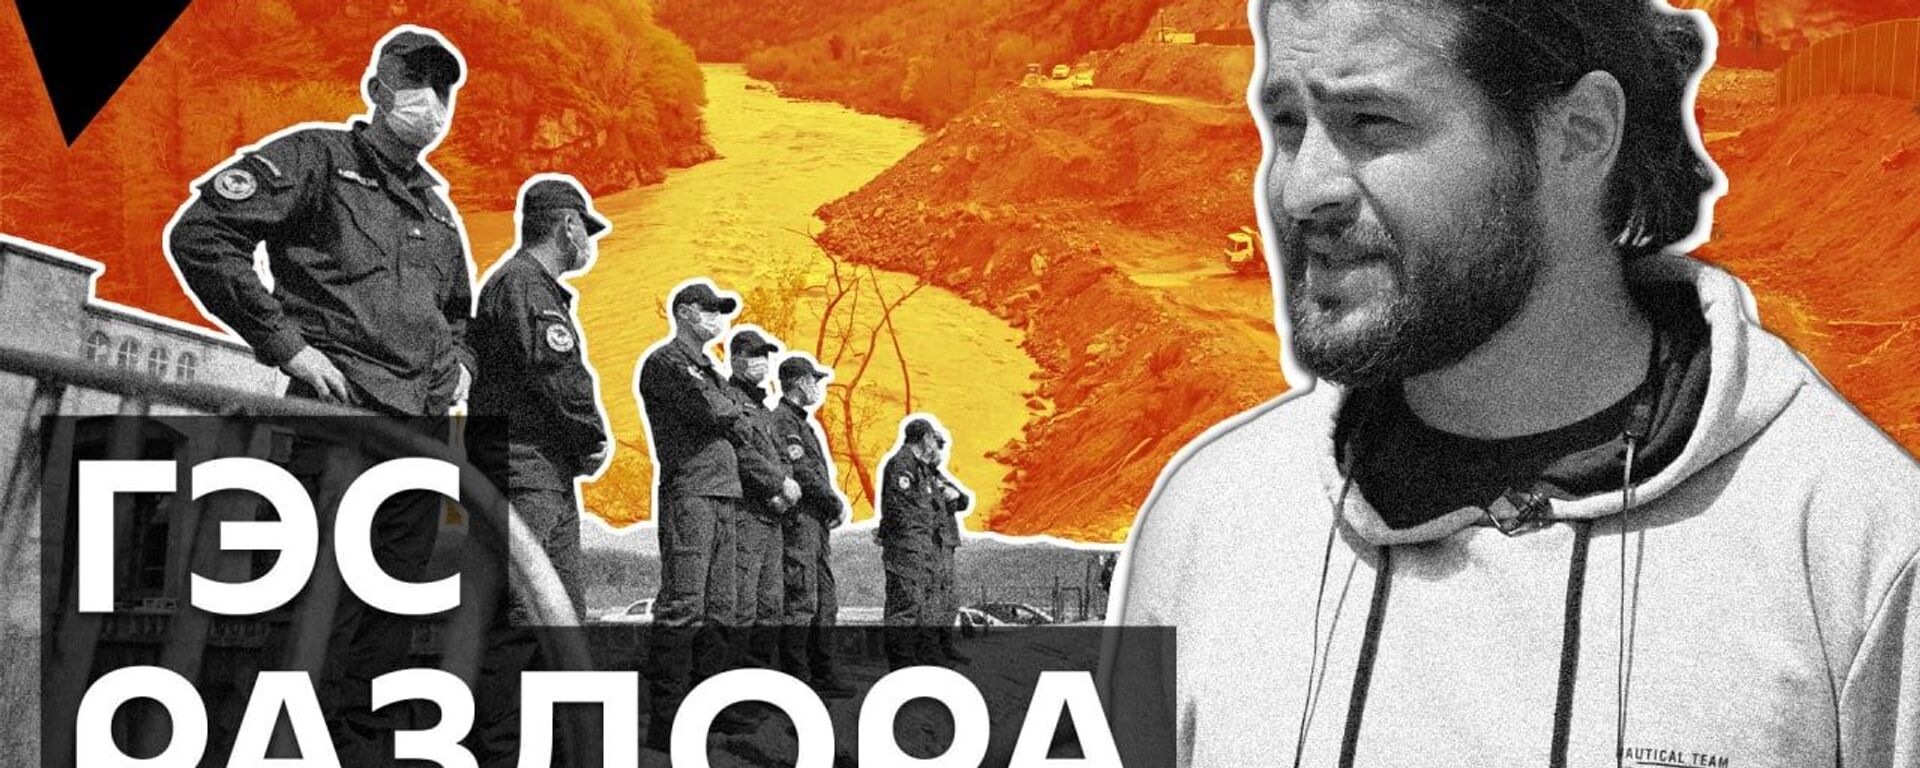 Намахвани ГЭС и протесты: чем грозит гидроэлектростанция жителям на западе Грузии - видео - Sputnik Грузия, 1920, 27.04.2021